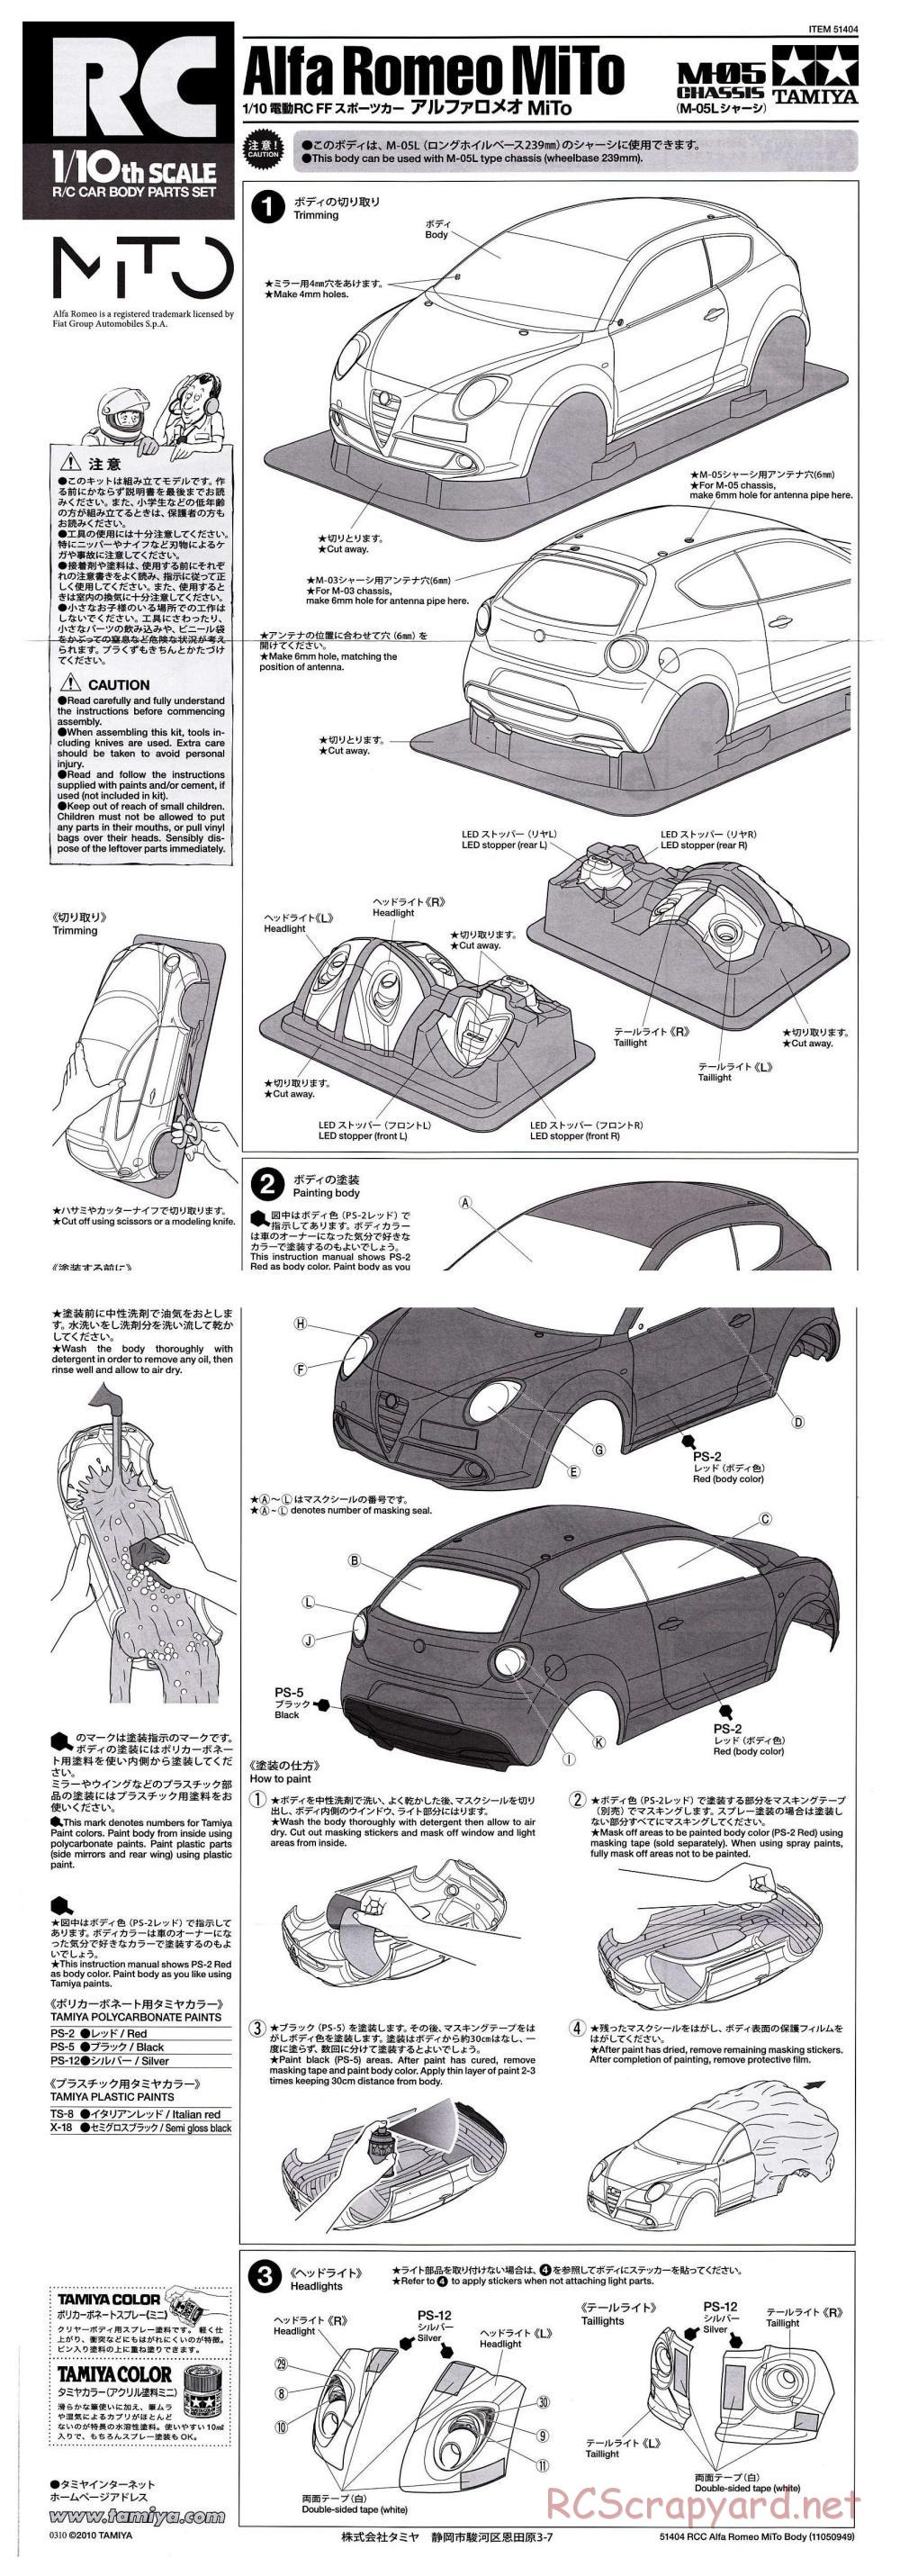 Tamiya - Alfa Romeo MiTo - M-05 Chassis - Body Manual - Page 1